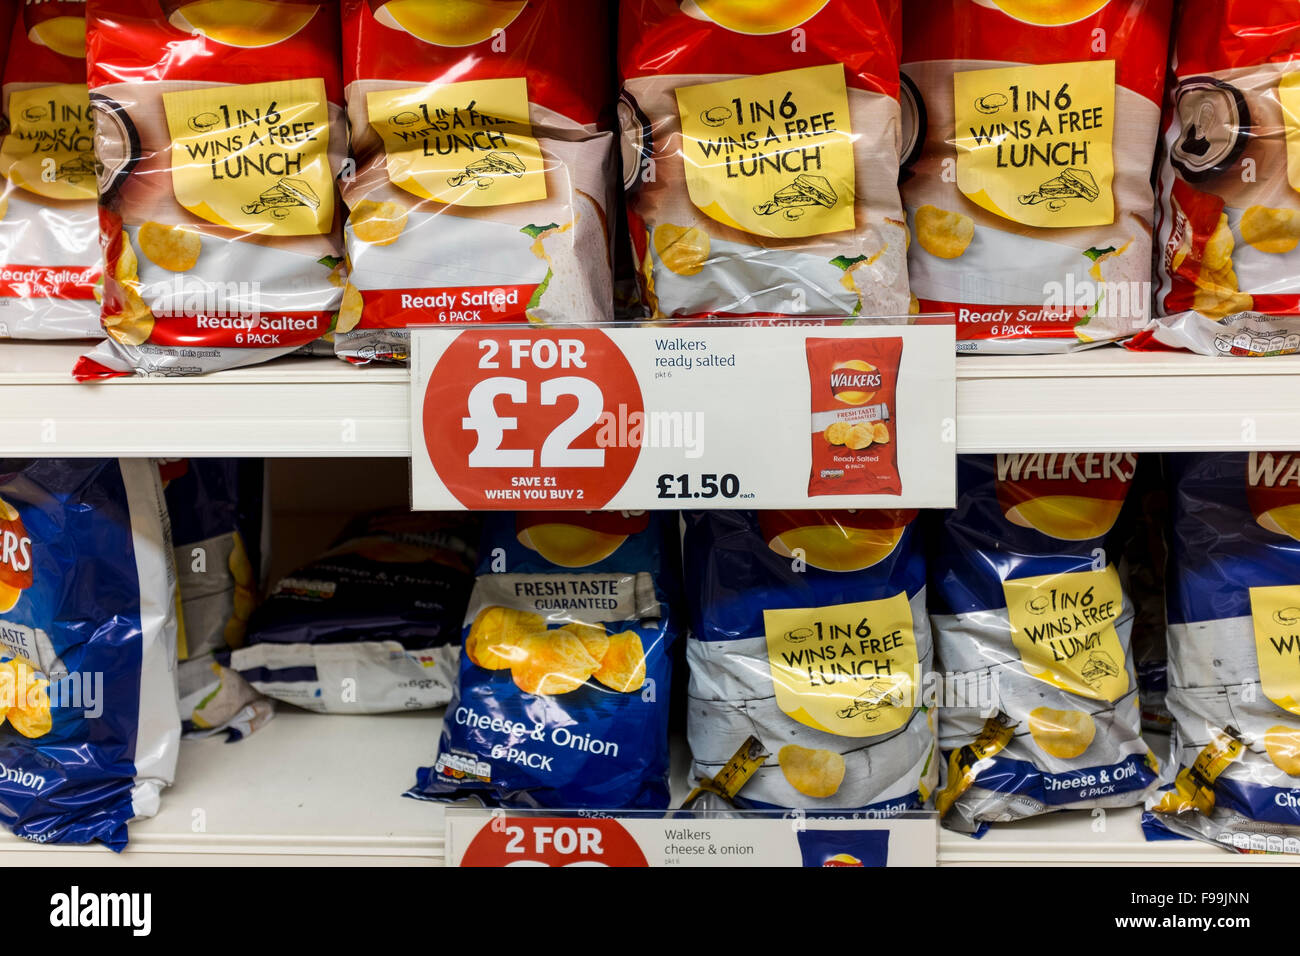 2 for £2 crisps offer in supermarket, UK Stock Photo